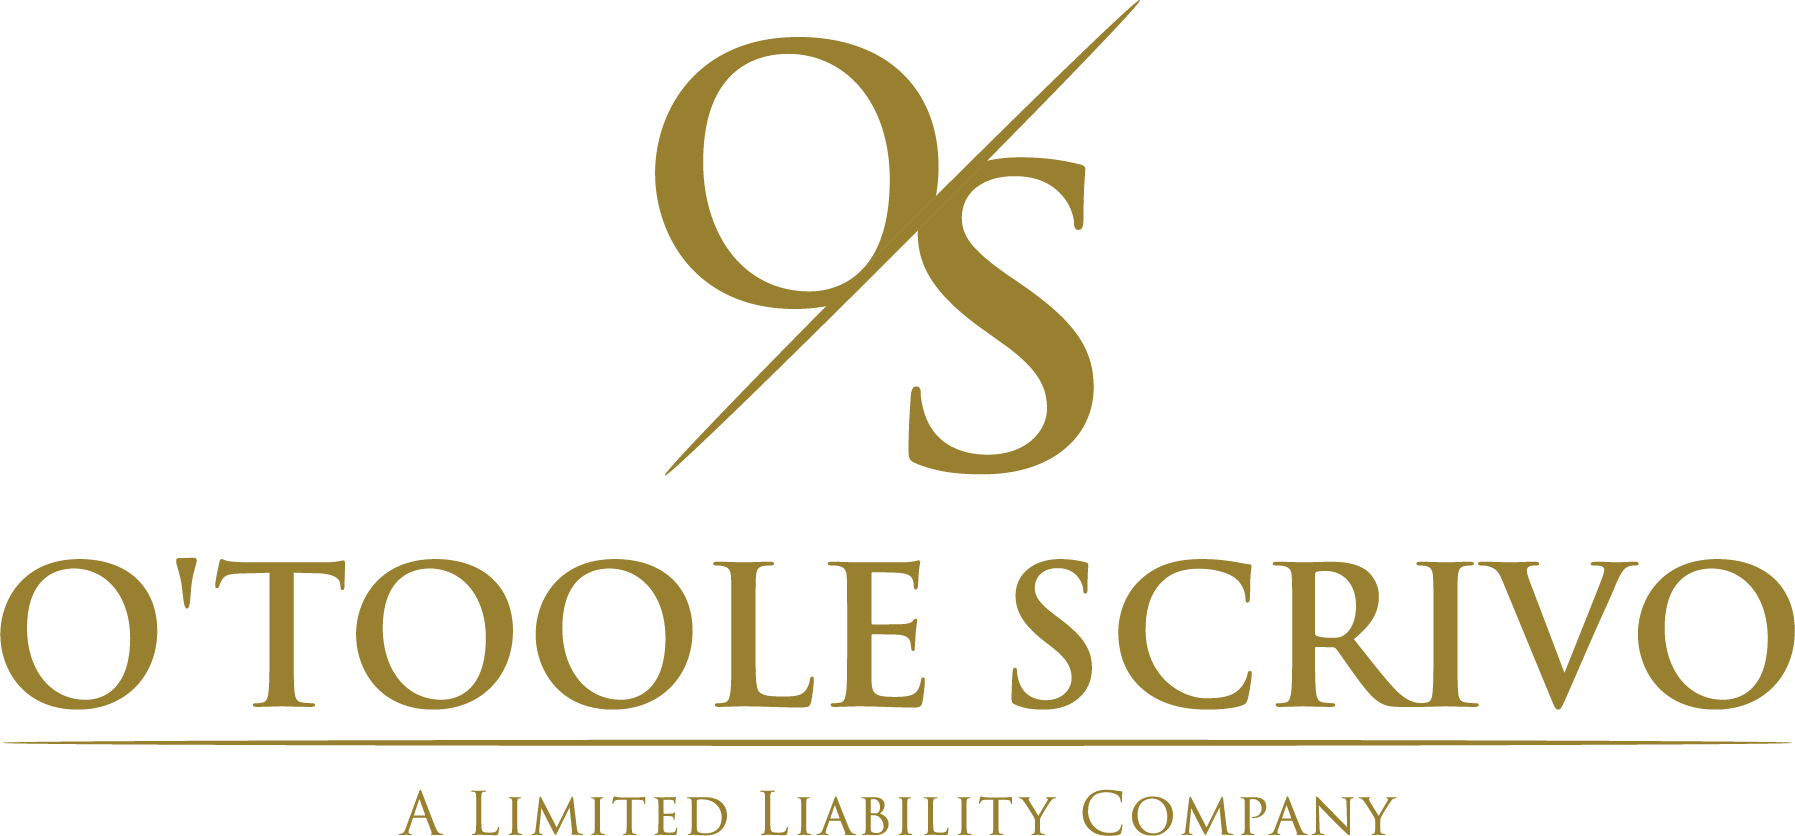 O'Toole Scrivo logo